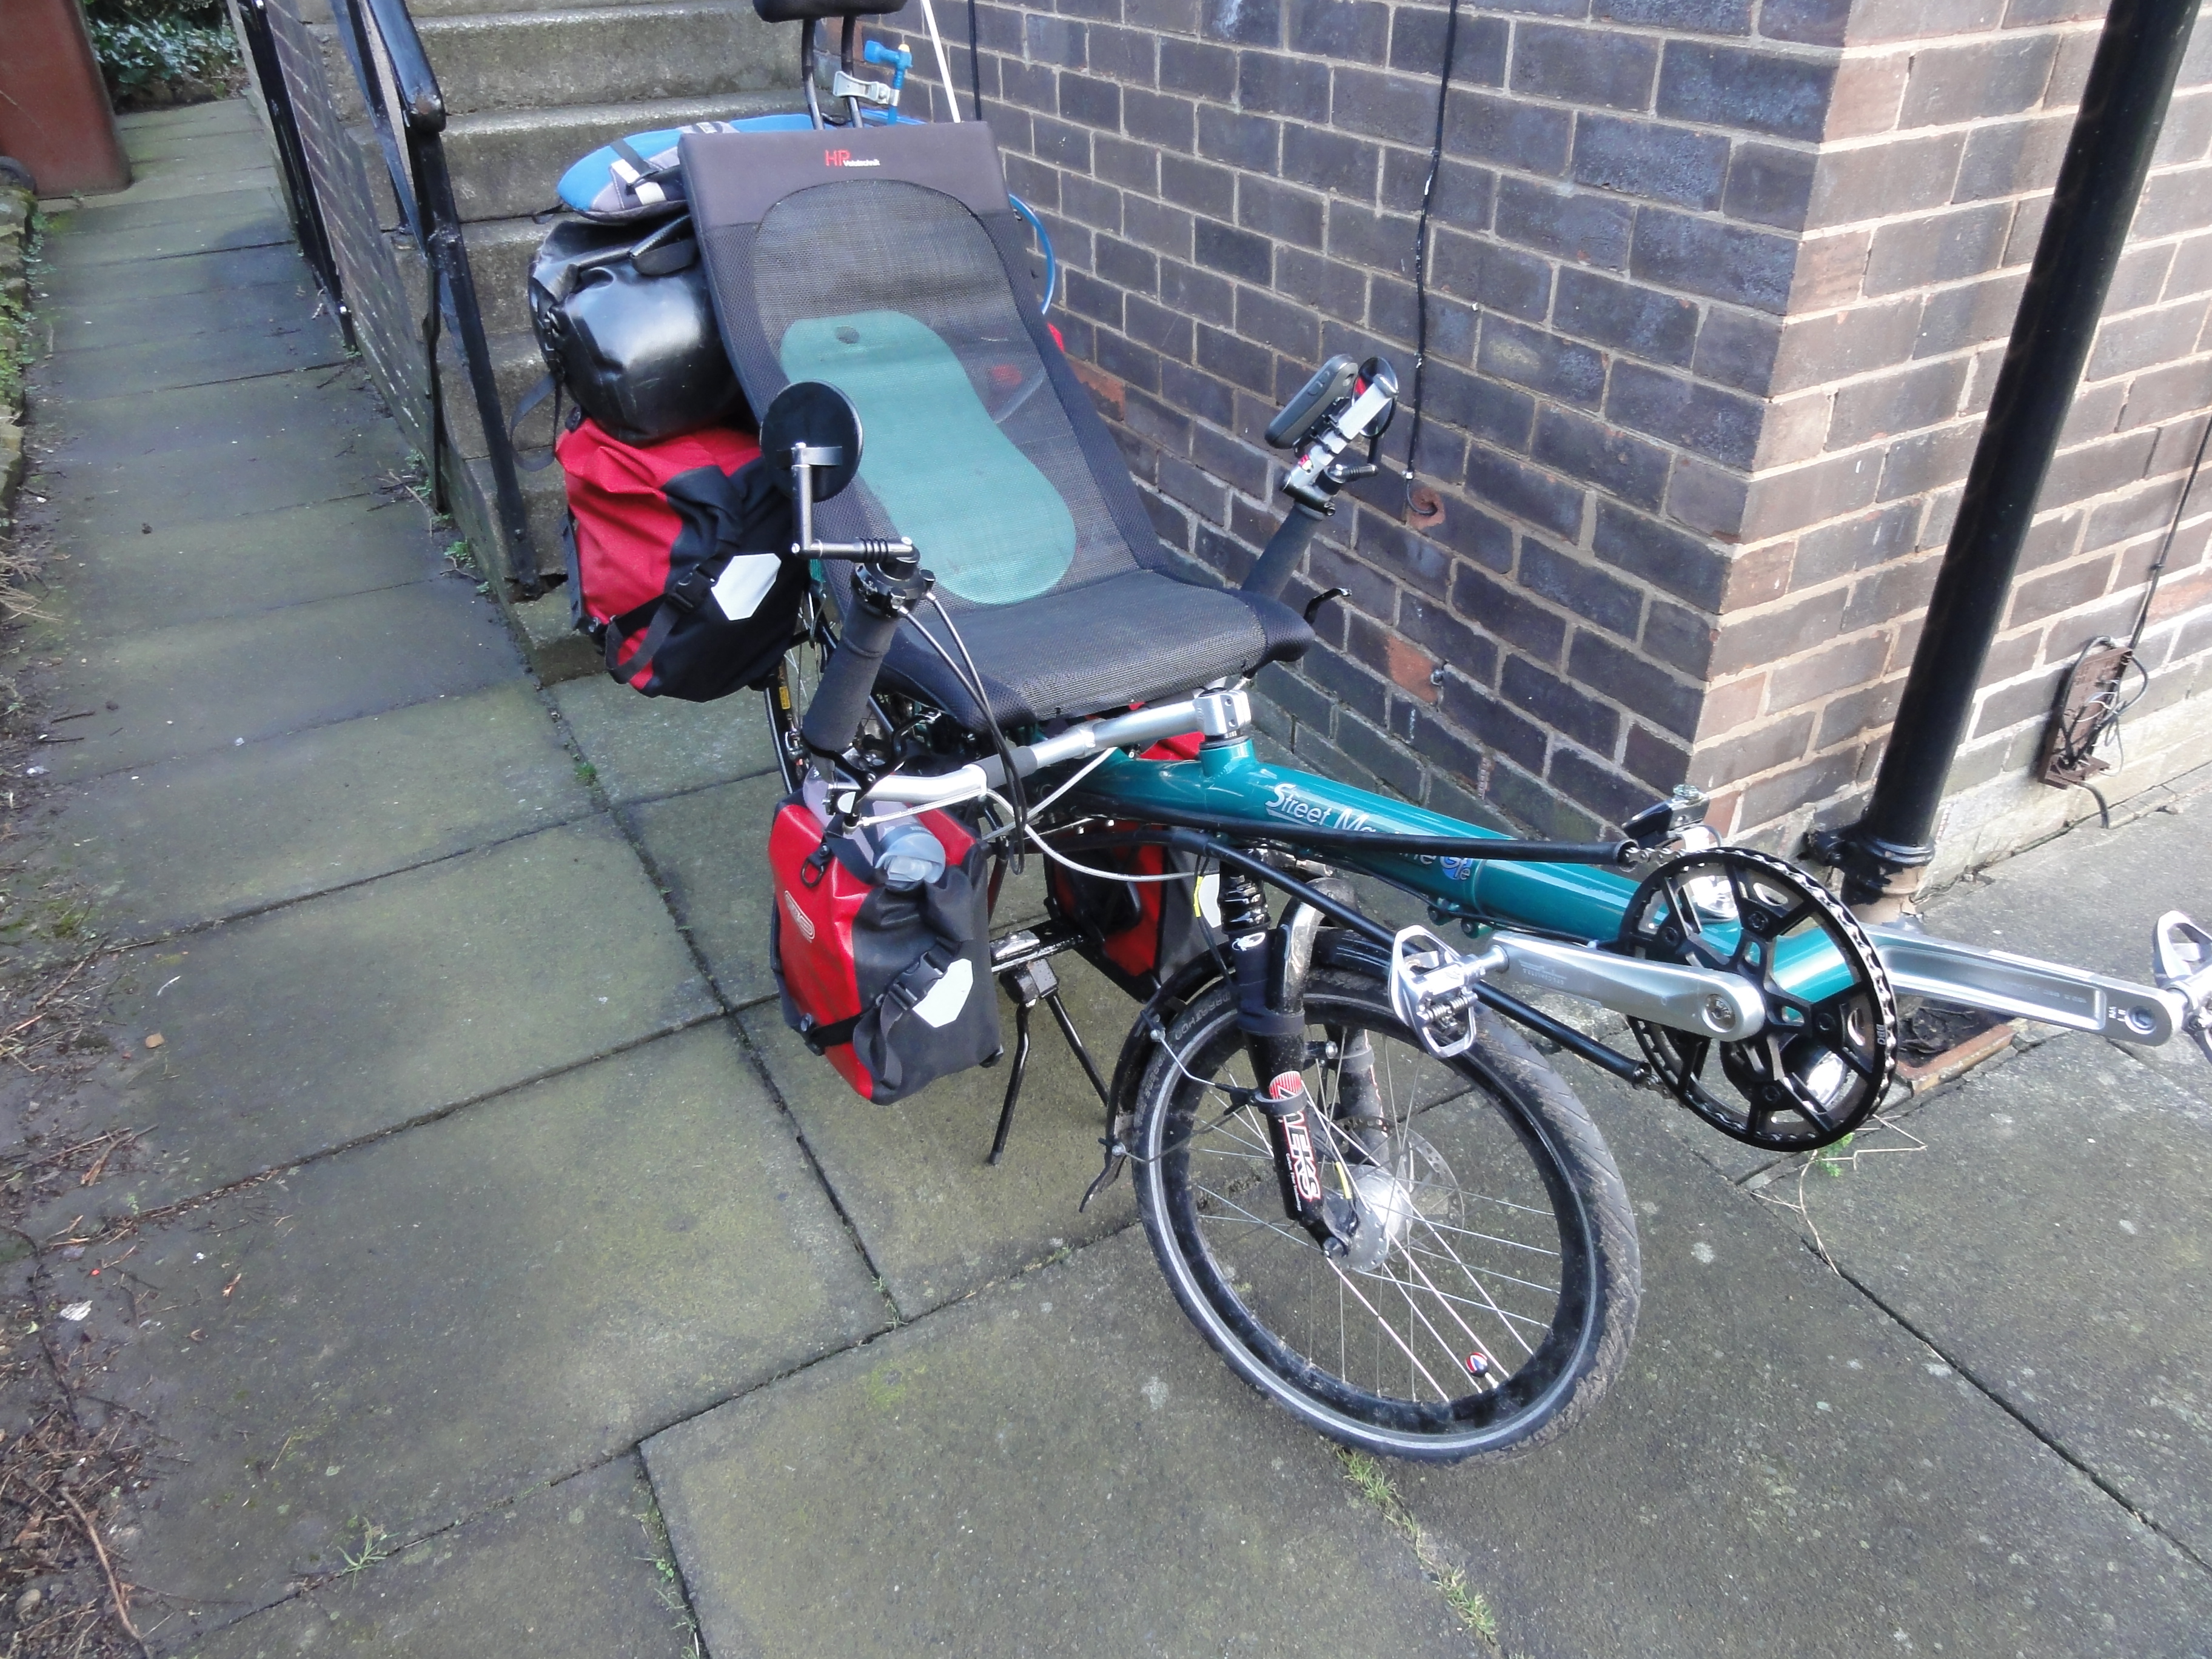 Packed bike